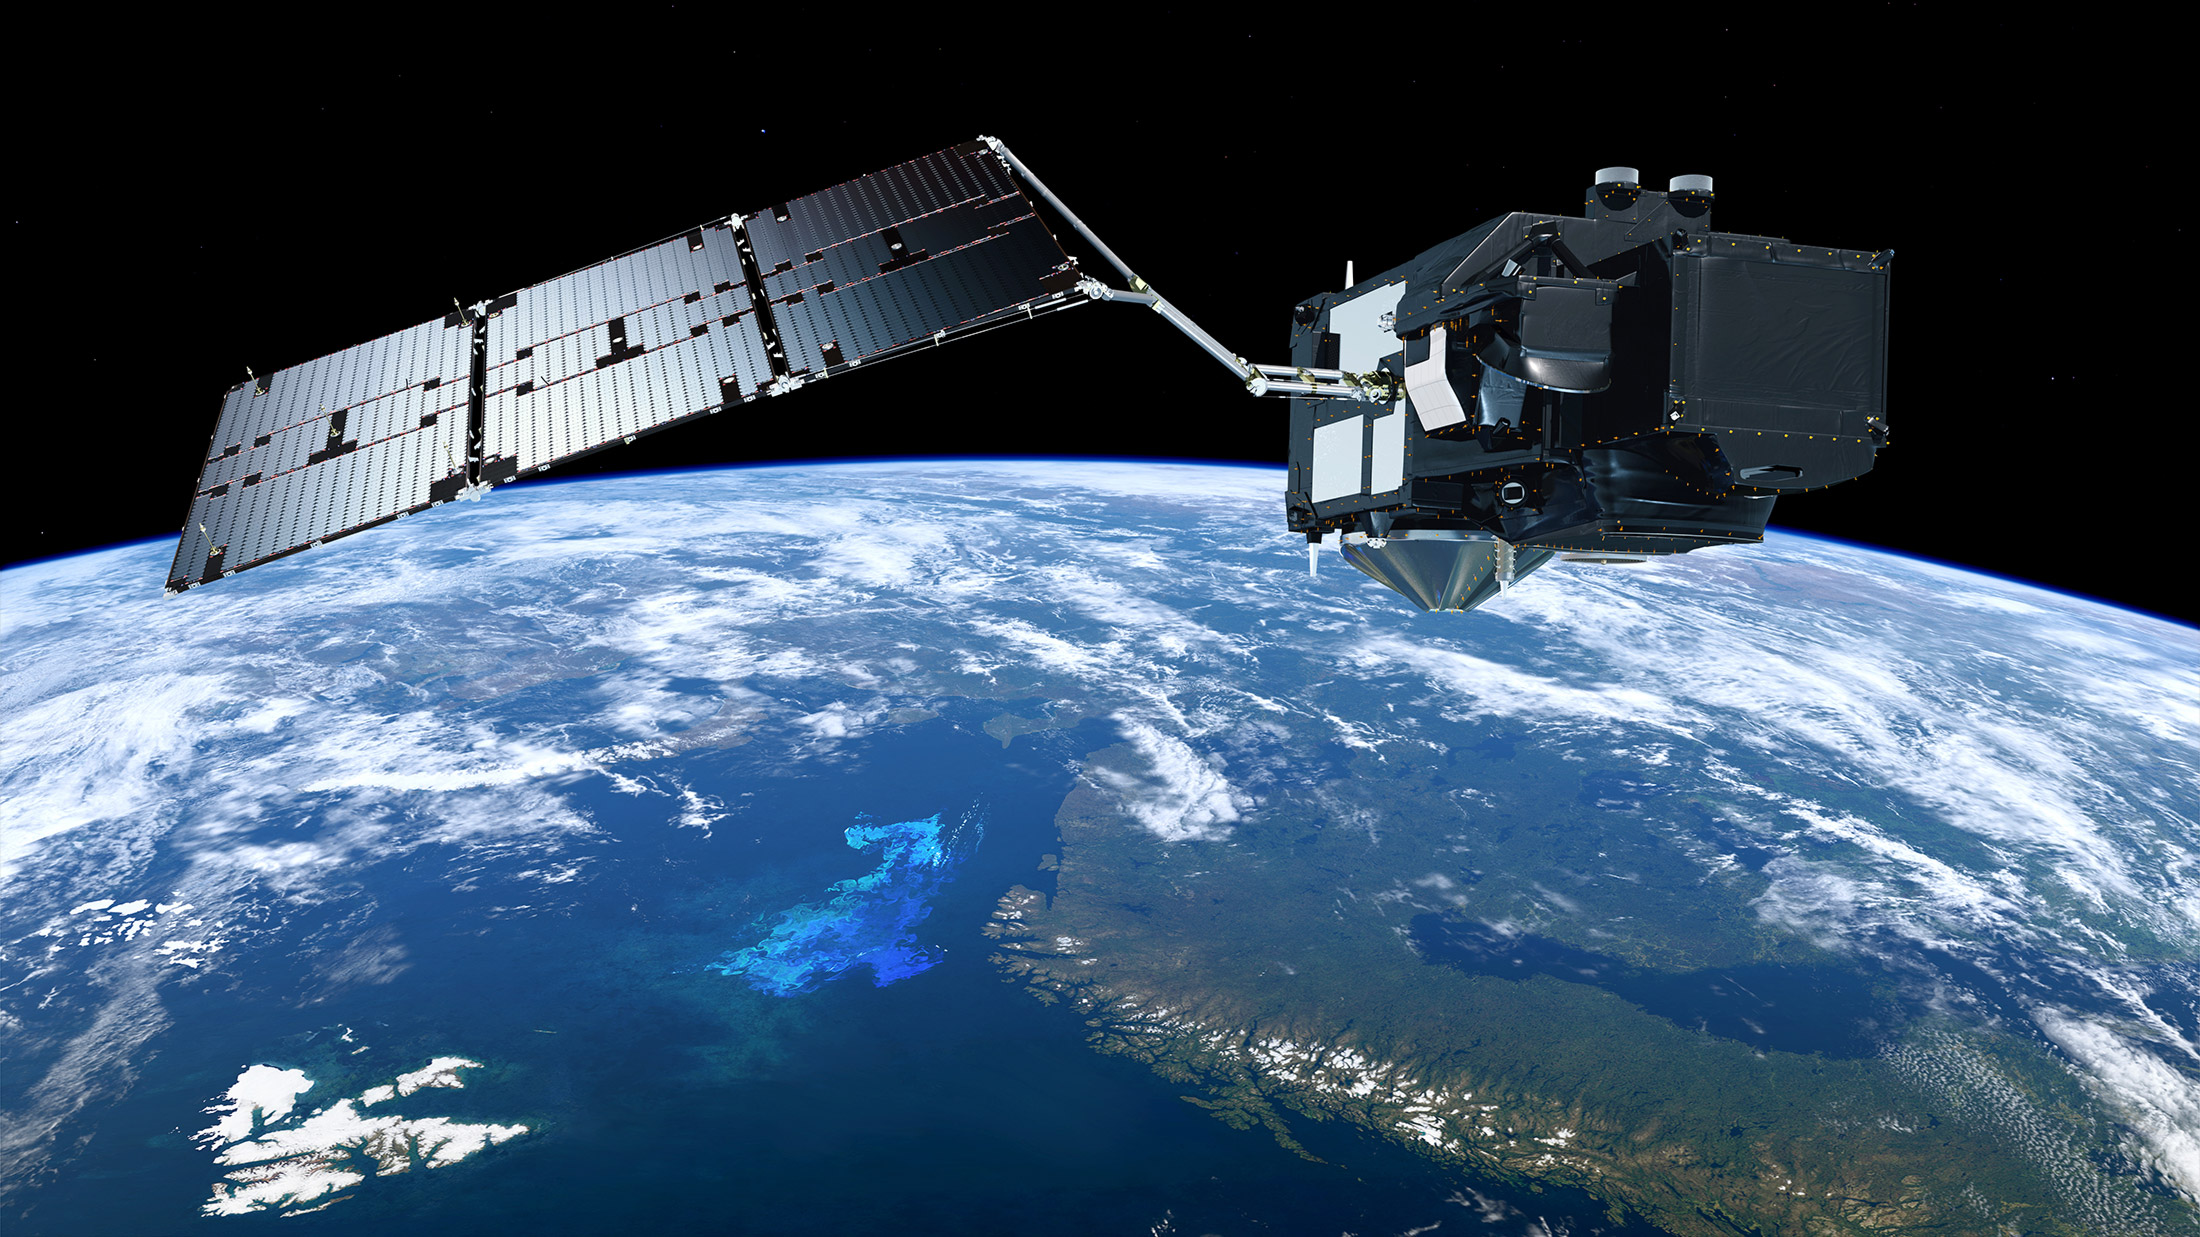 Le satellite Sentinel 3B s'apprête à décoller. Ici, un satellite Sentinel 3. Financés par la Commission européenne et l'Agence spatiale européenne (ESA), les satellites Sentinel 3 sont construits par Thales Alenia Space et opérés par Eumetsat. © S. Corvaja, ESA